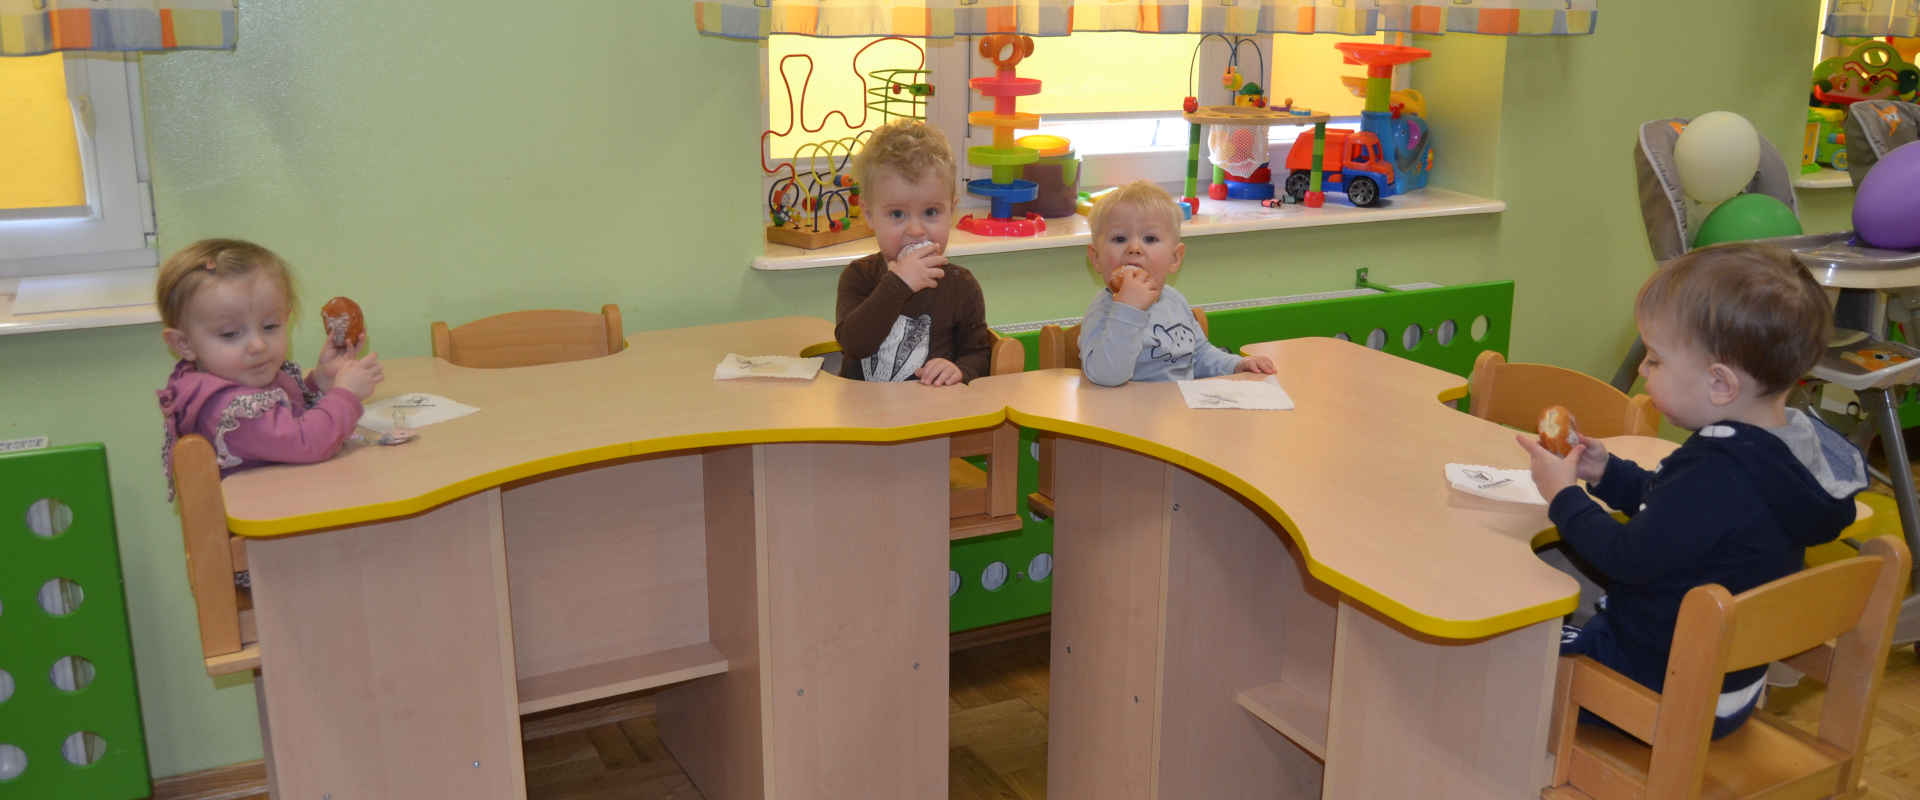 Dzieci siedzą za biurkami i jedzą pączki